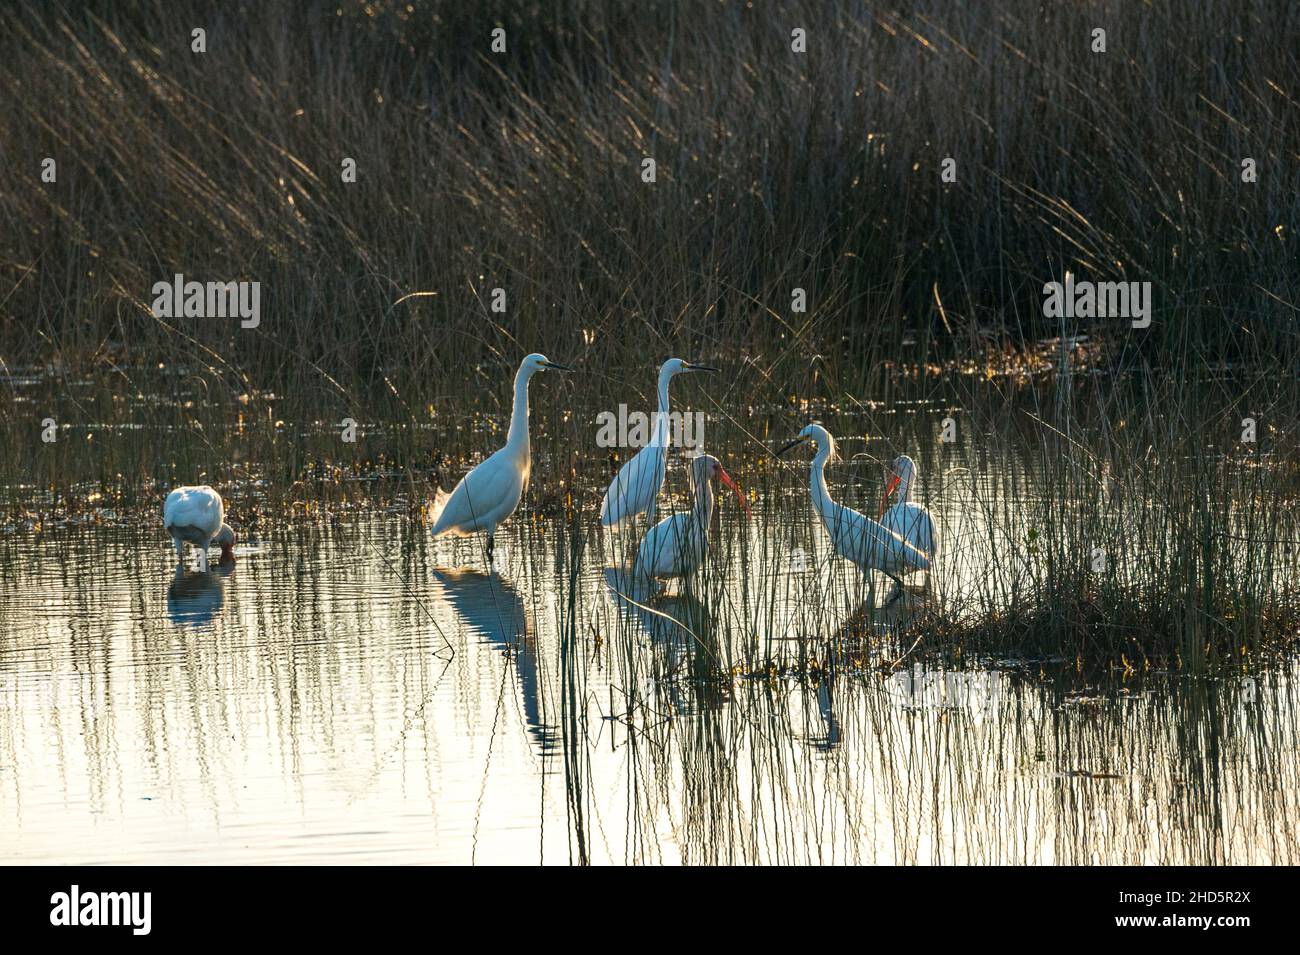 Oiseaux hivernant se nourrissant dans un marais d'eau salée à marée peu profonde à la réserve naturelle nationale de Merritt Island, Floride Banque D'Images